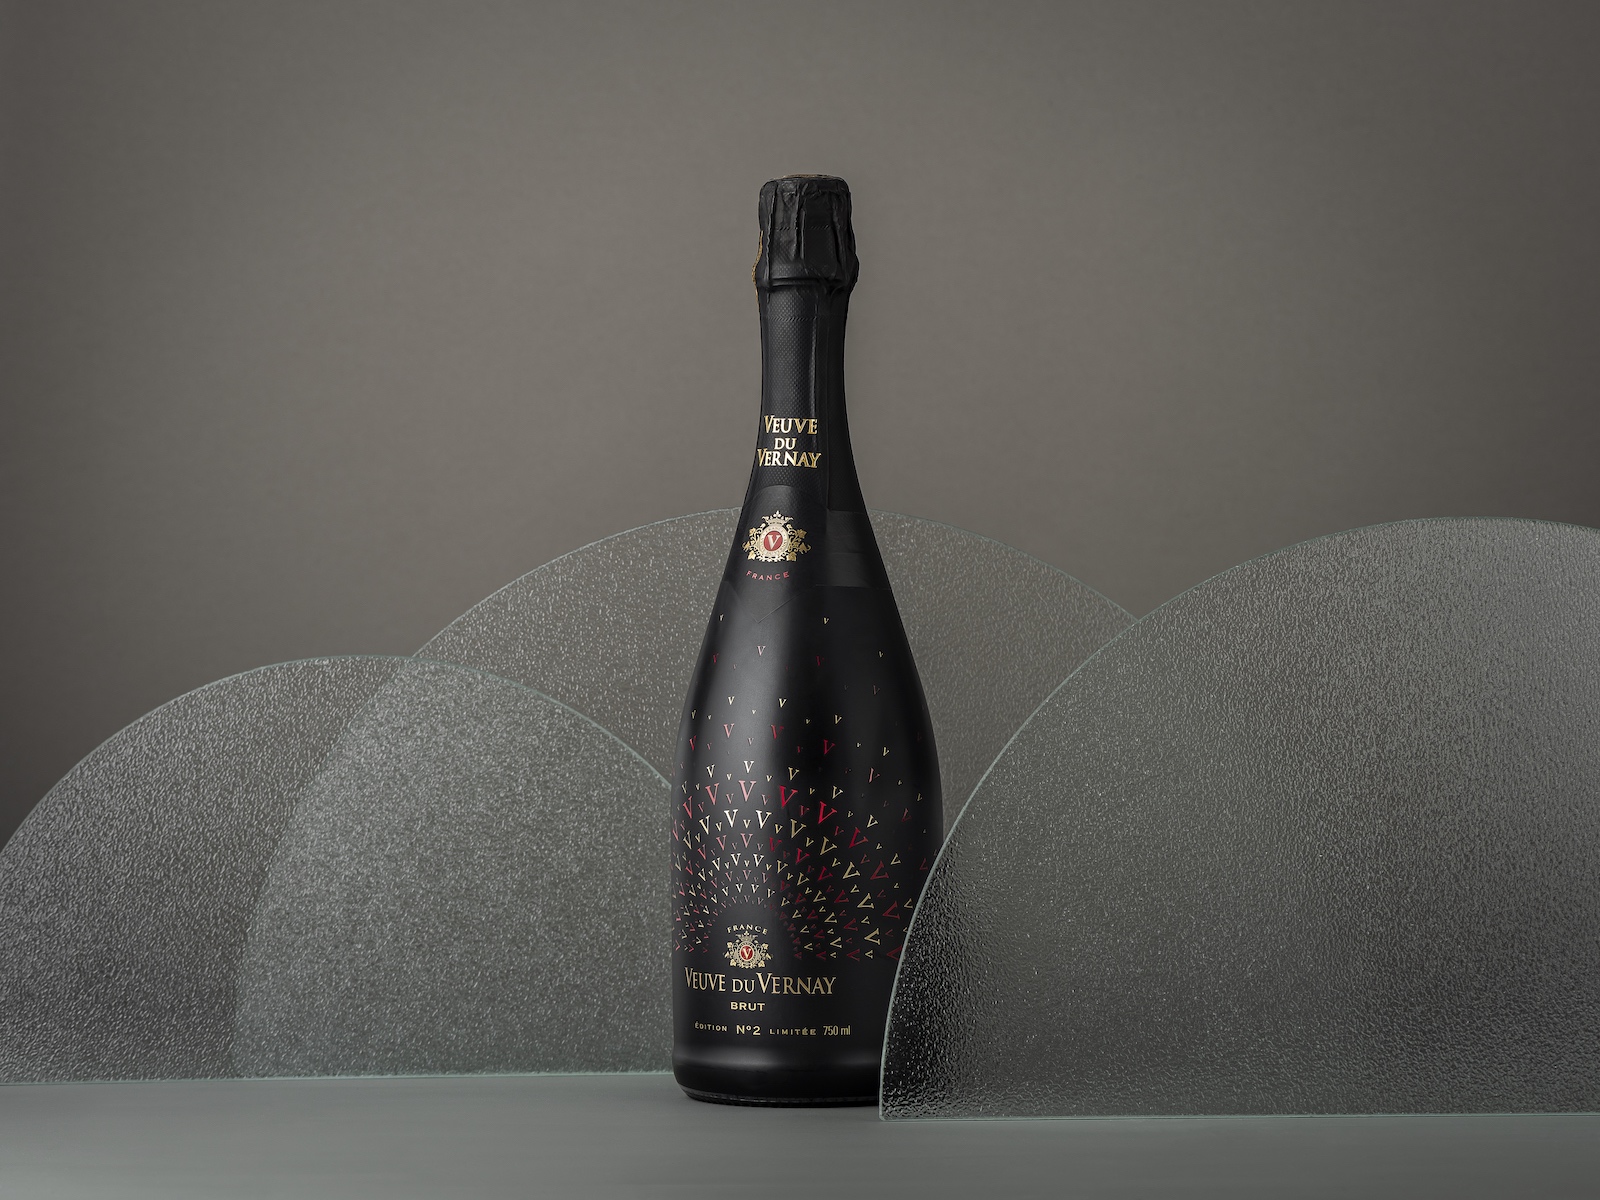 国际包装设计欣赏｜Veuve du vernay葡萄酒包装设计